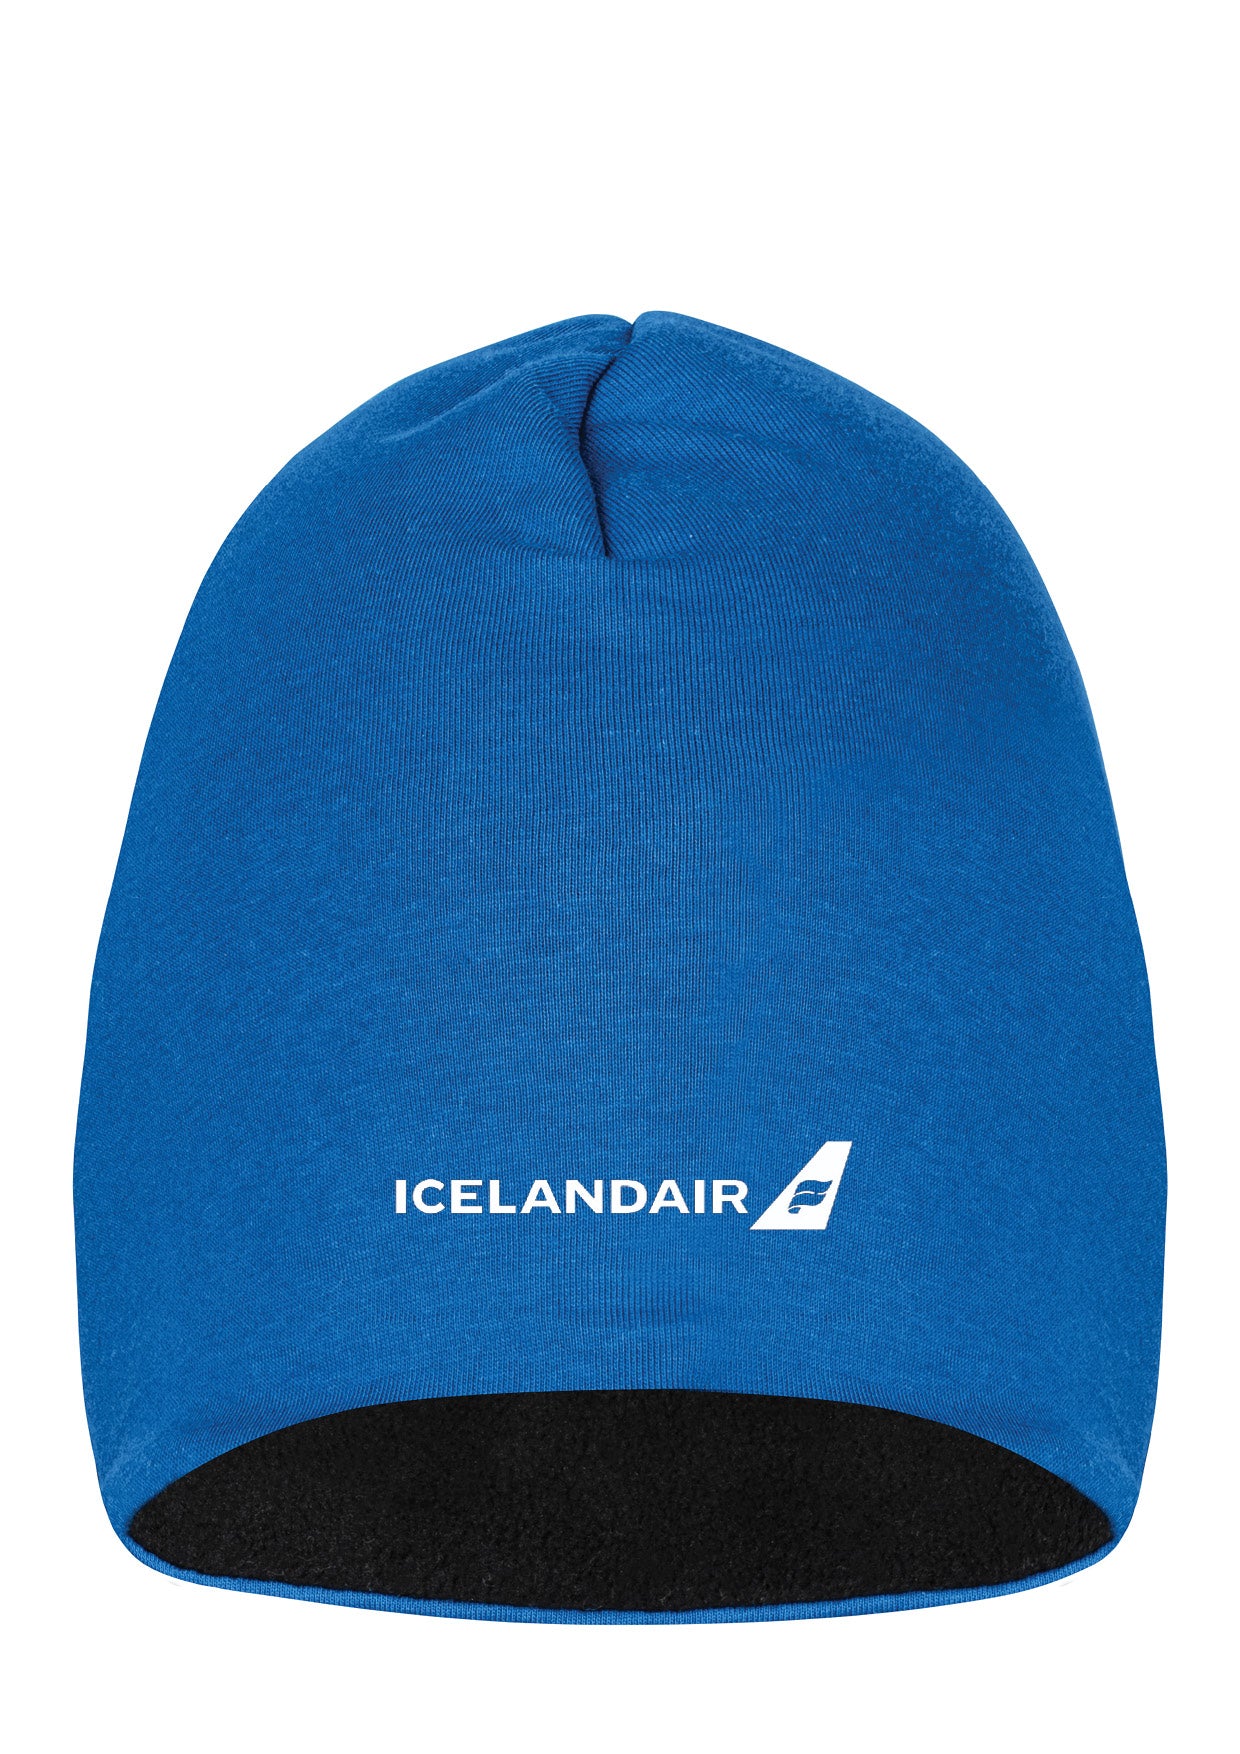 ICELANDAIR - húfa - blá (ein stærð)